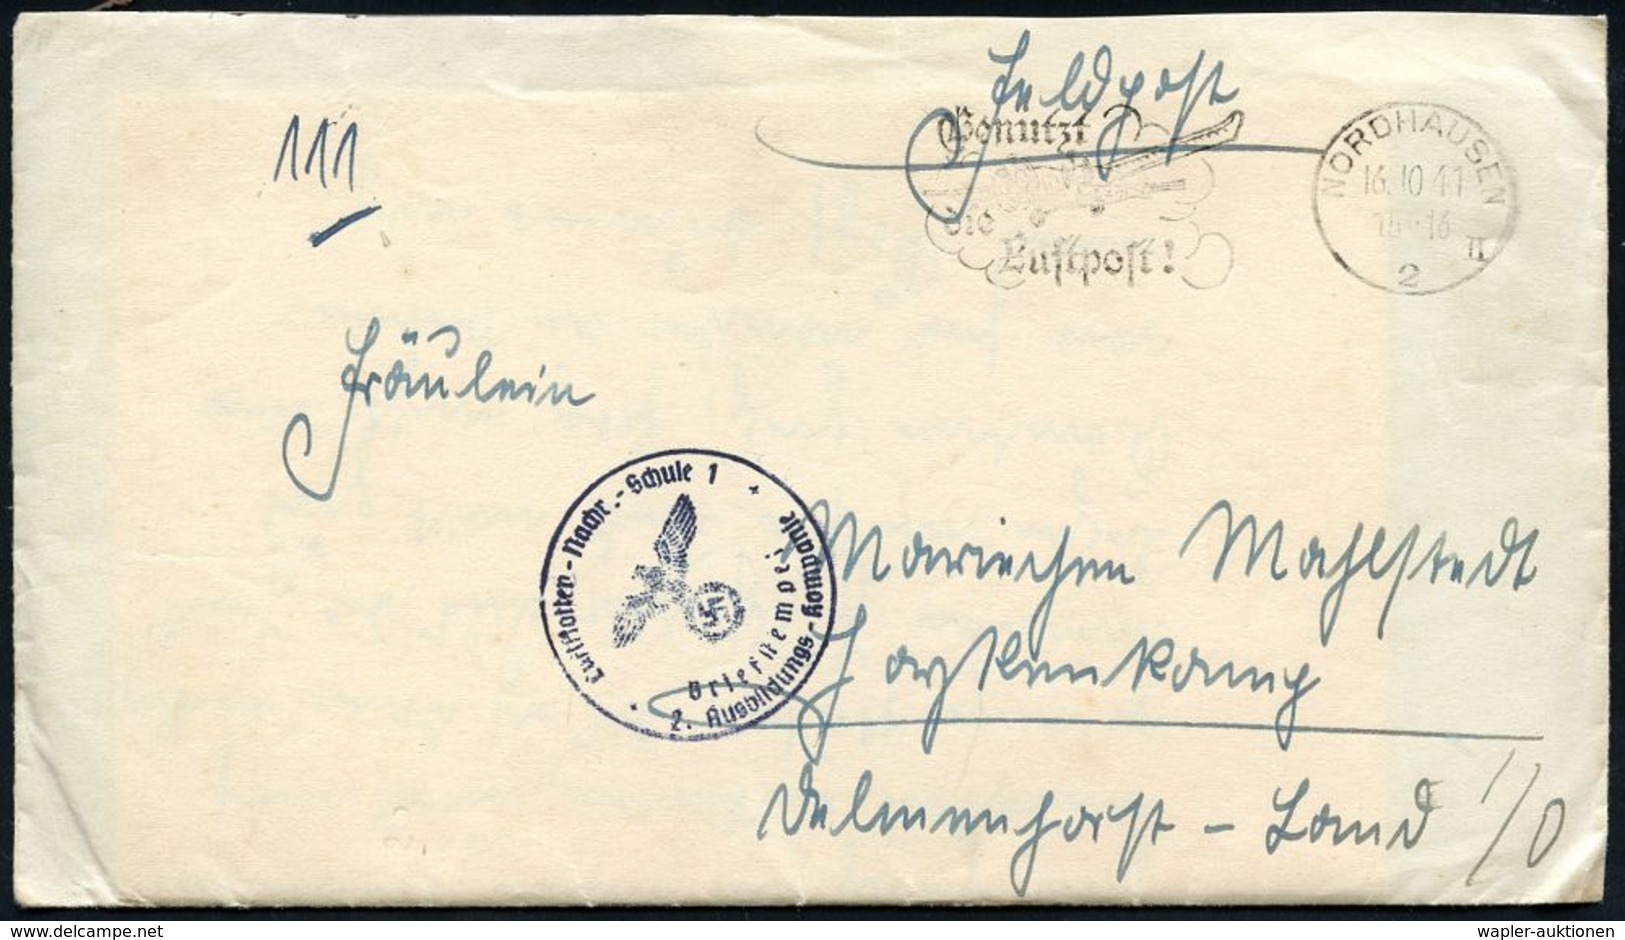 LUFTWAFFEN-FLUGSCHULEN & AKADEMIEN : NORDHAUSEN/ 2/ II/ Benutzt/ Die/ Luftpost! 1941 (14.10.) MWSt + Blauer 1K-HdN: Luft - Aerei